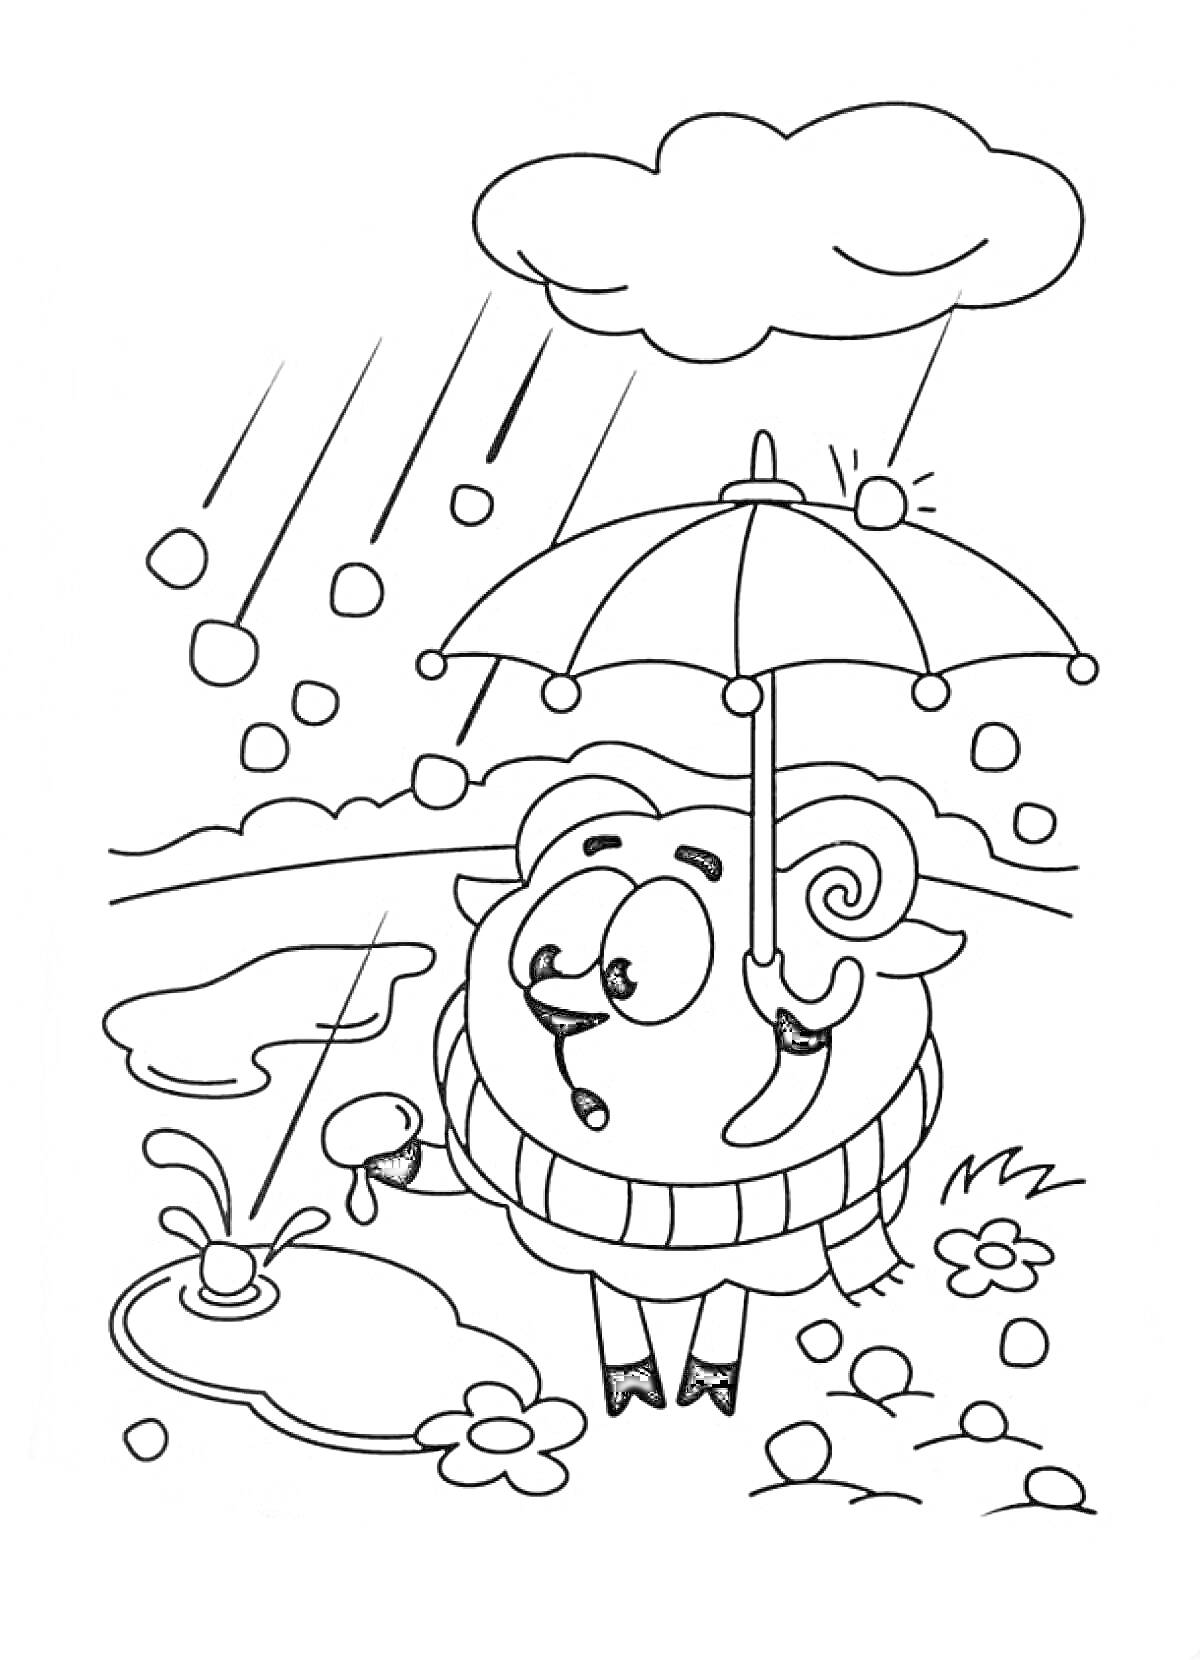 Раскраска Бараш со смешариками под дождём, с зонтиком, лужей и цветами